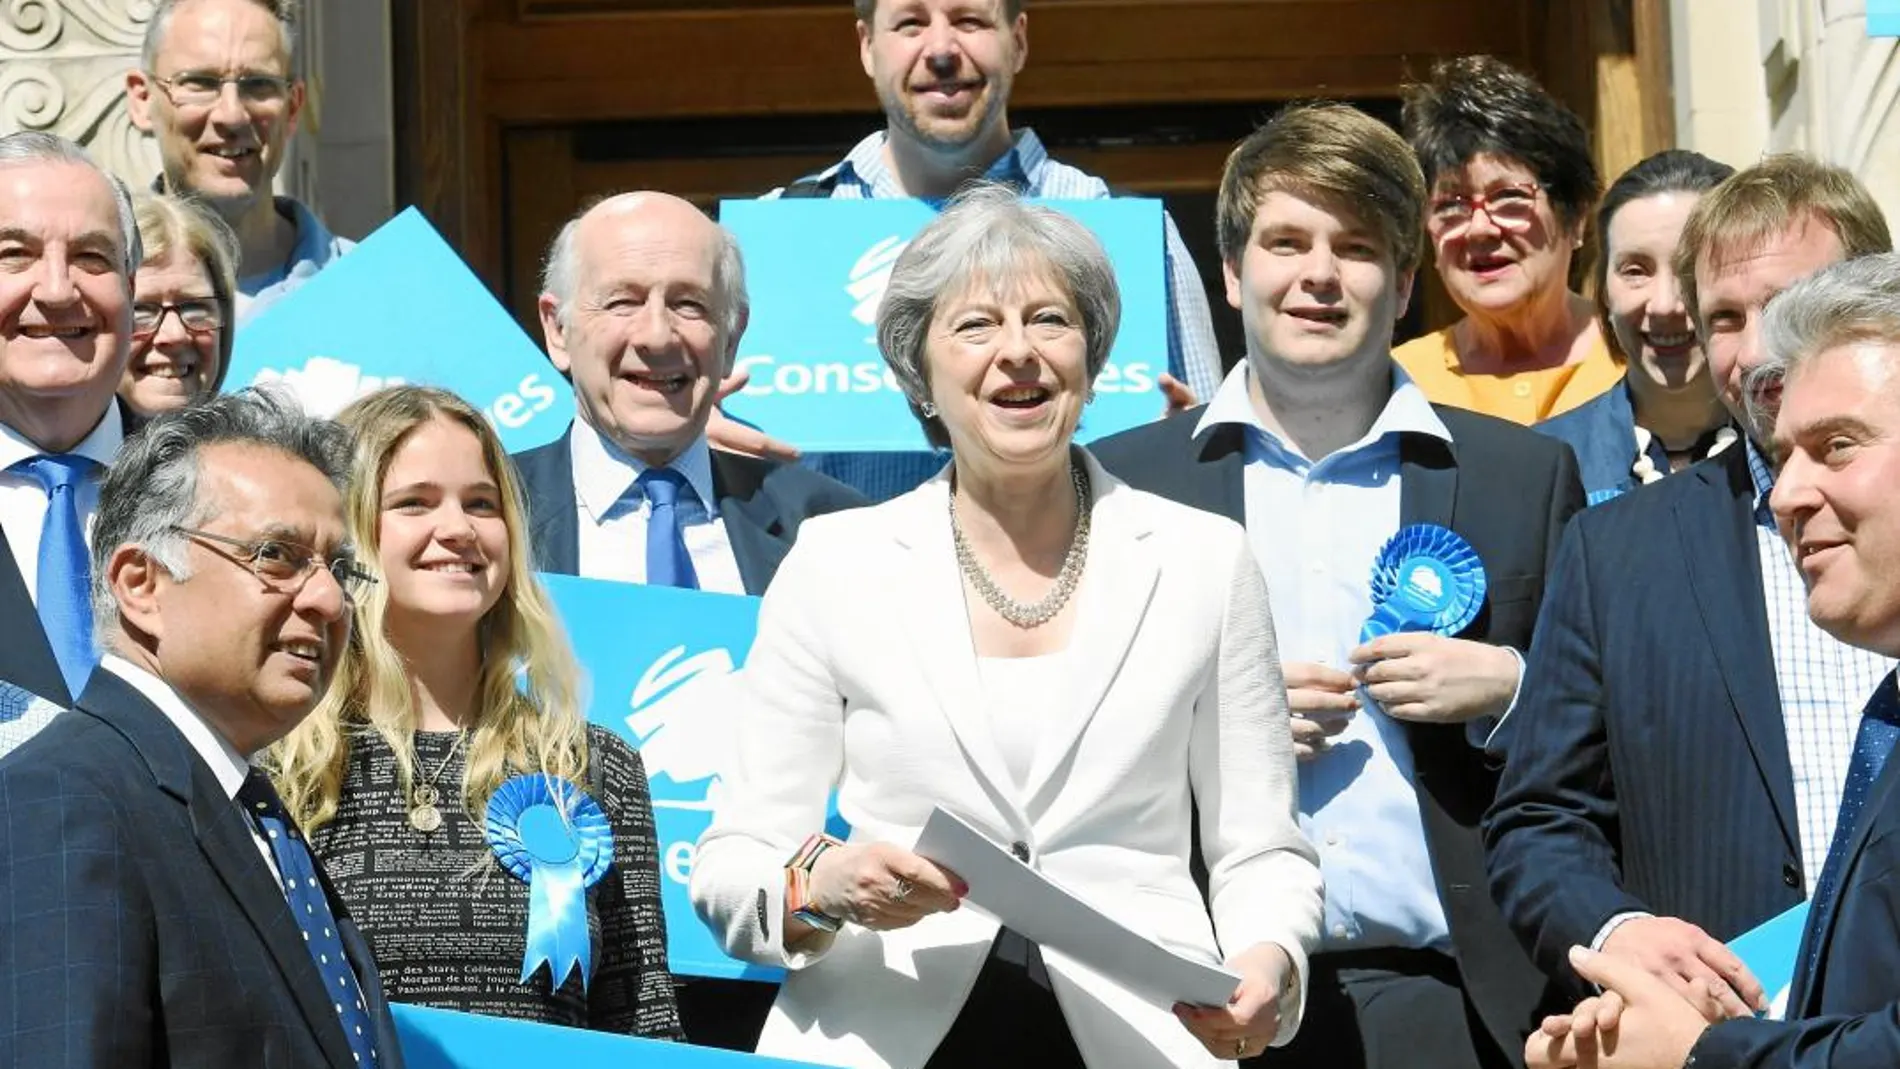 La primera ministra británca, Theresa May, acudió ayer rodeada de colaboradores del partido conservador al ayuntamiento de Wandsworth, Londres